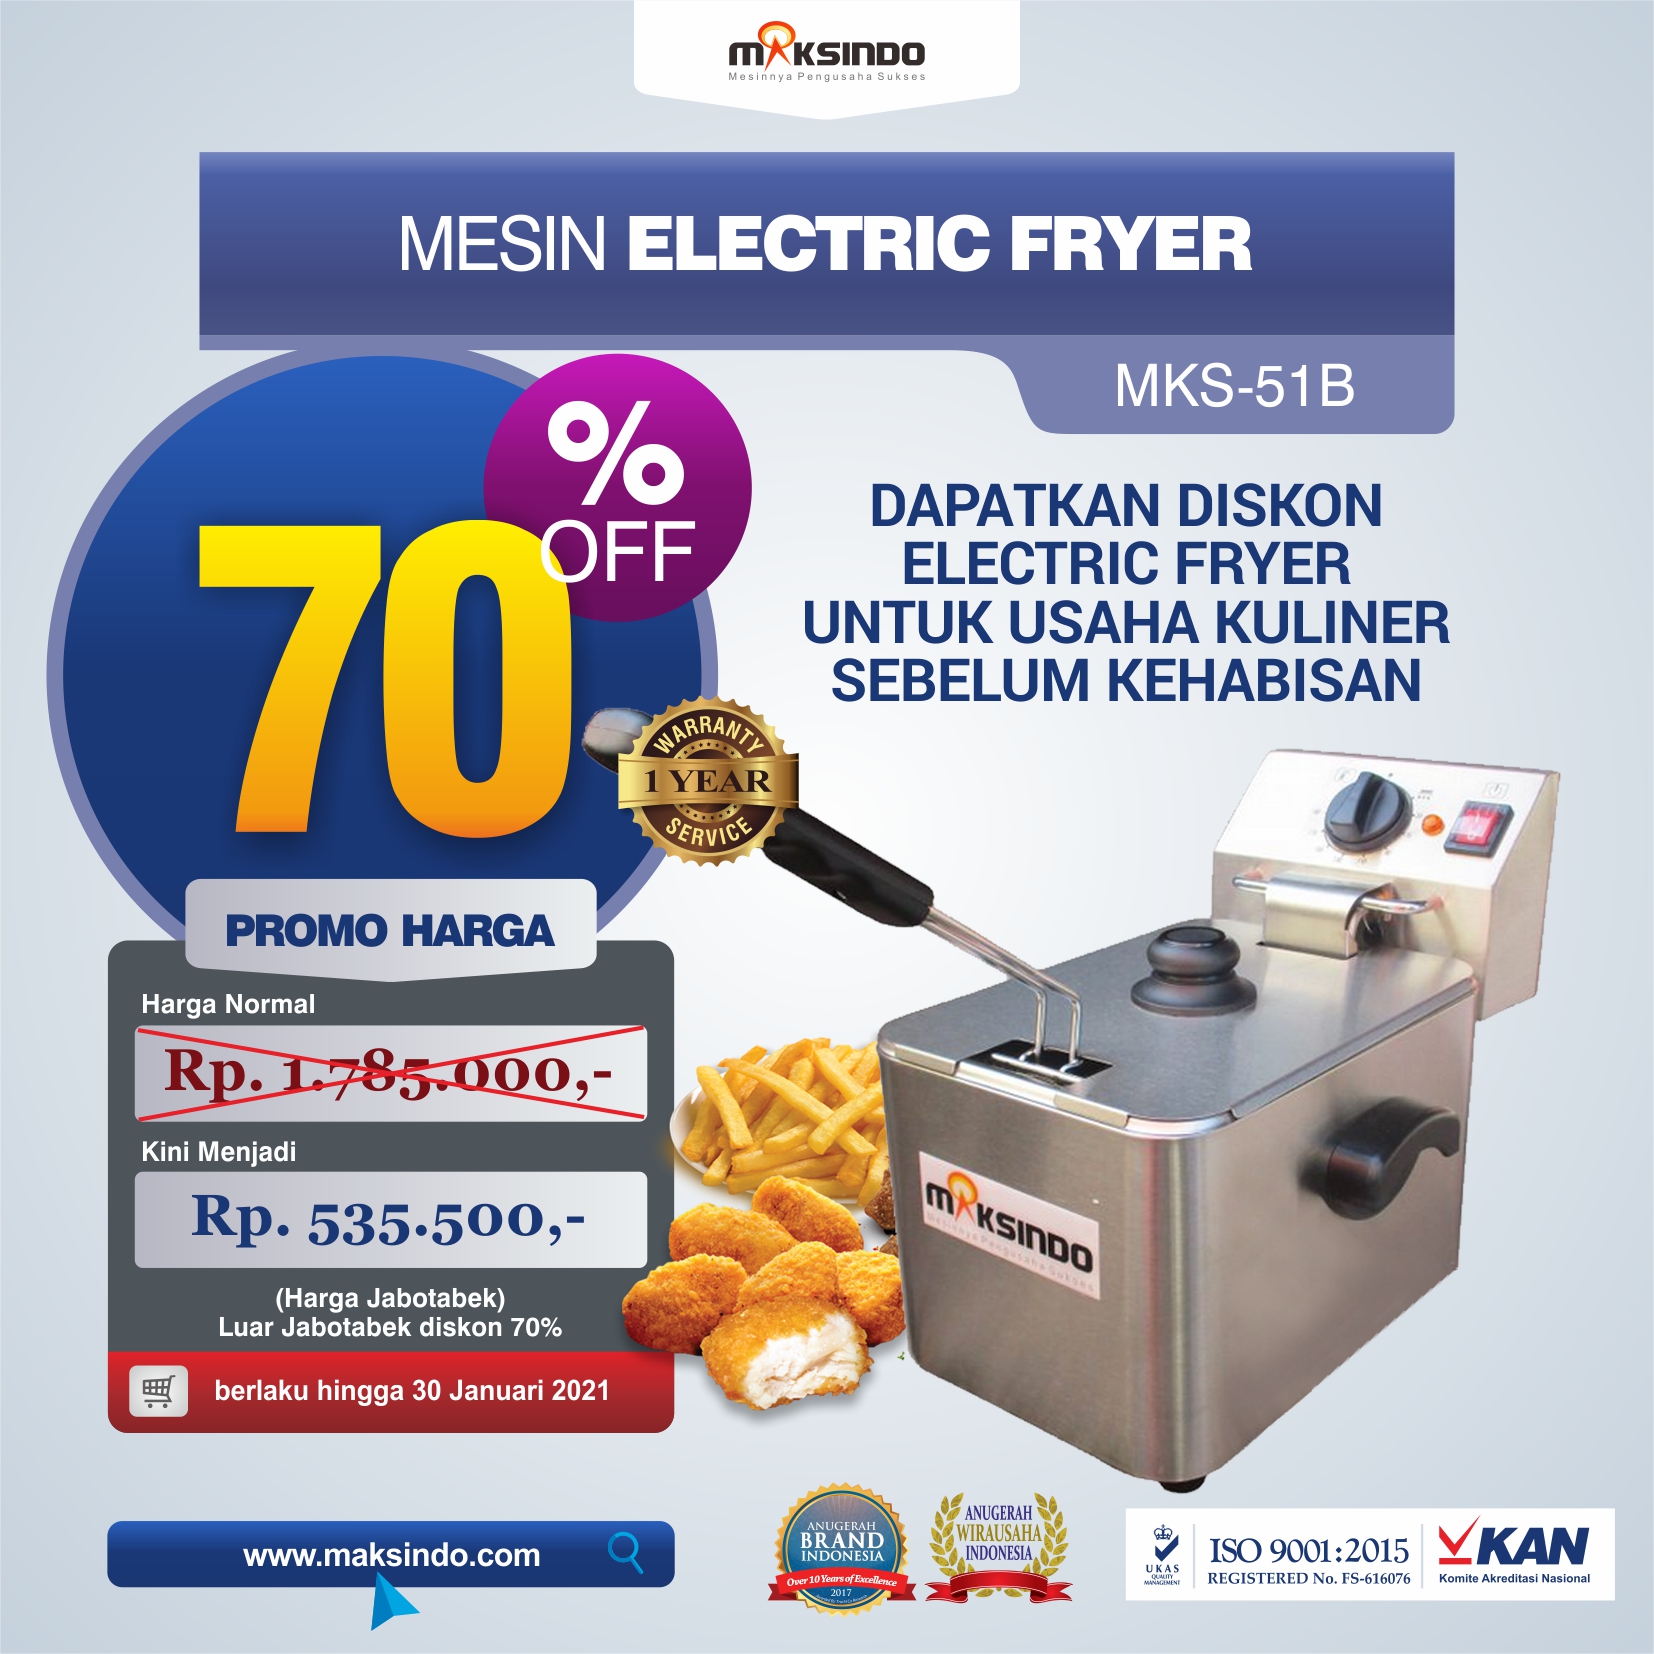 Jual Mesin Electric Fryer MKS-51B di Malang